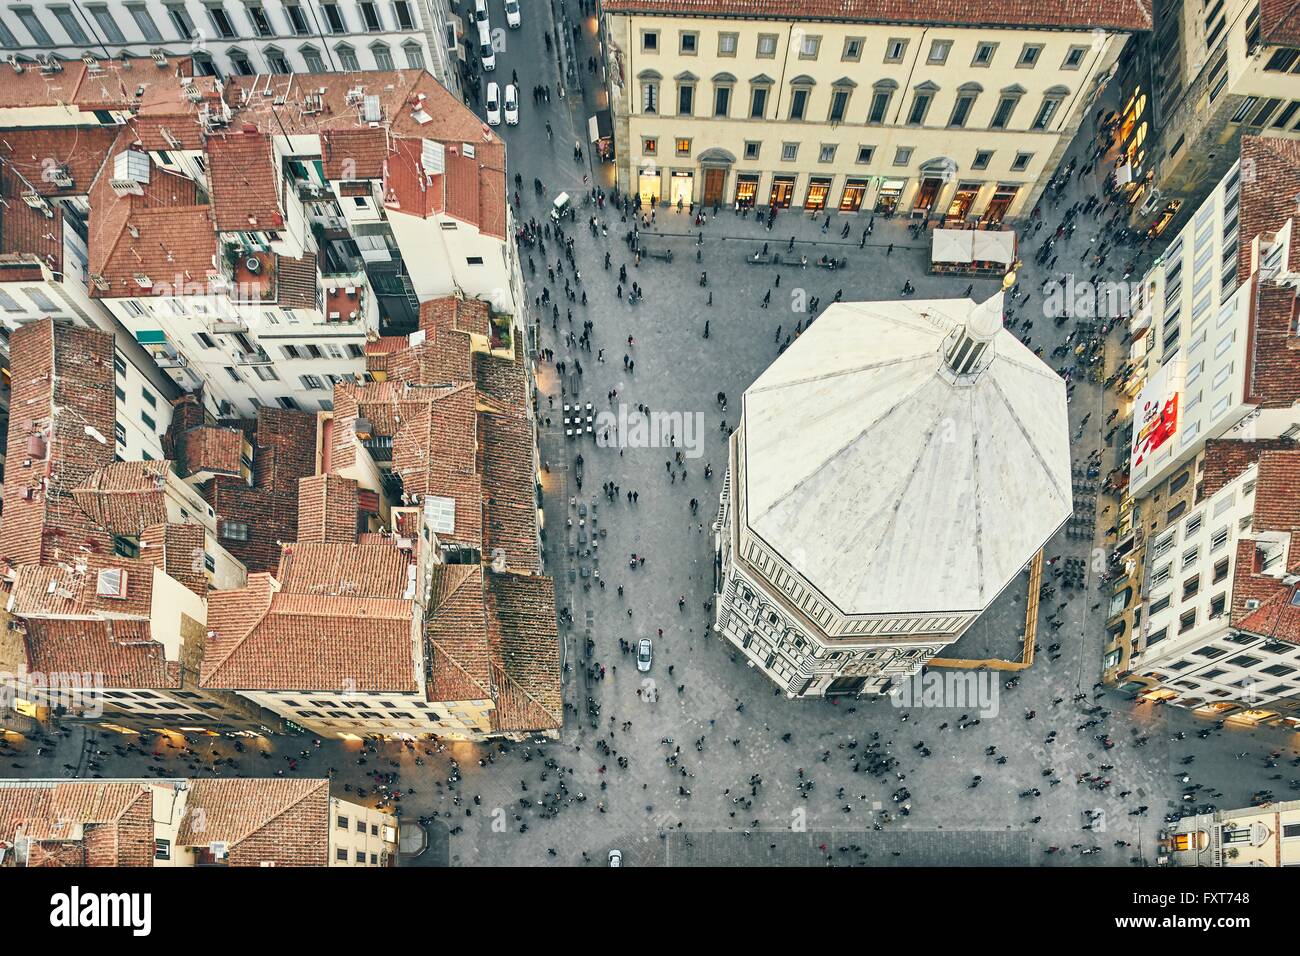 Vue aérienne de touristes et le baptistère de Saint Jean, Florence, Italie Banque D'Images